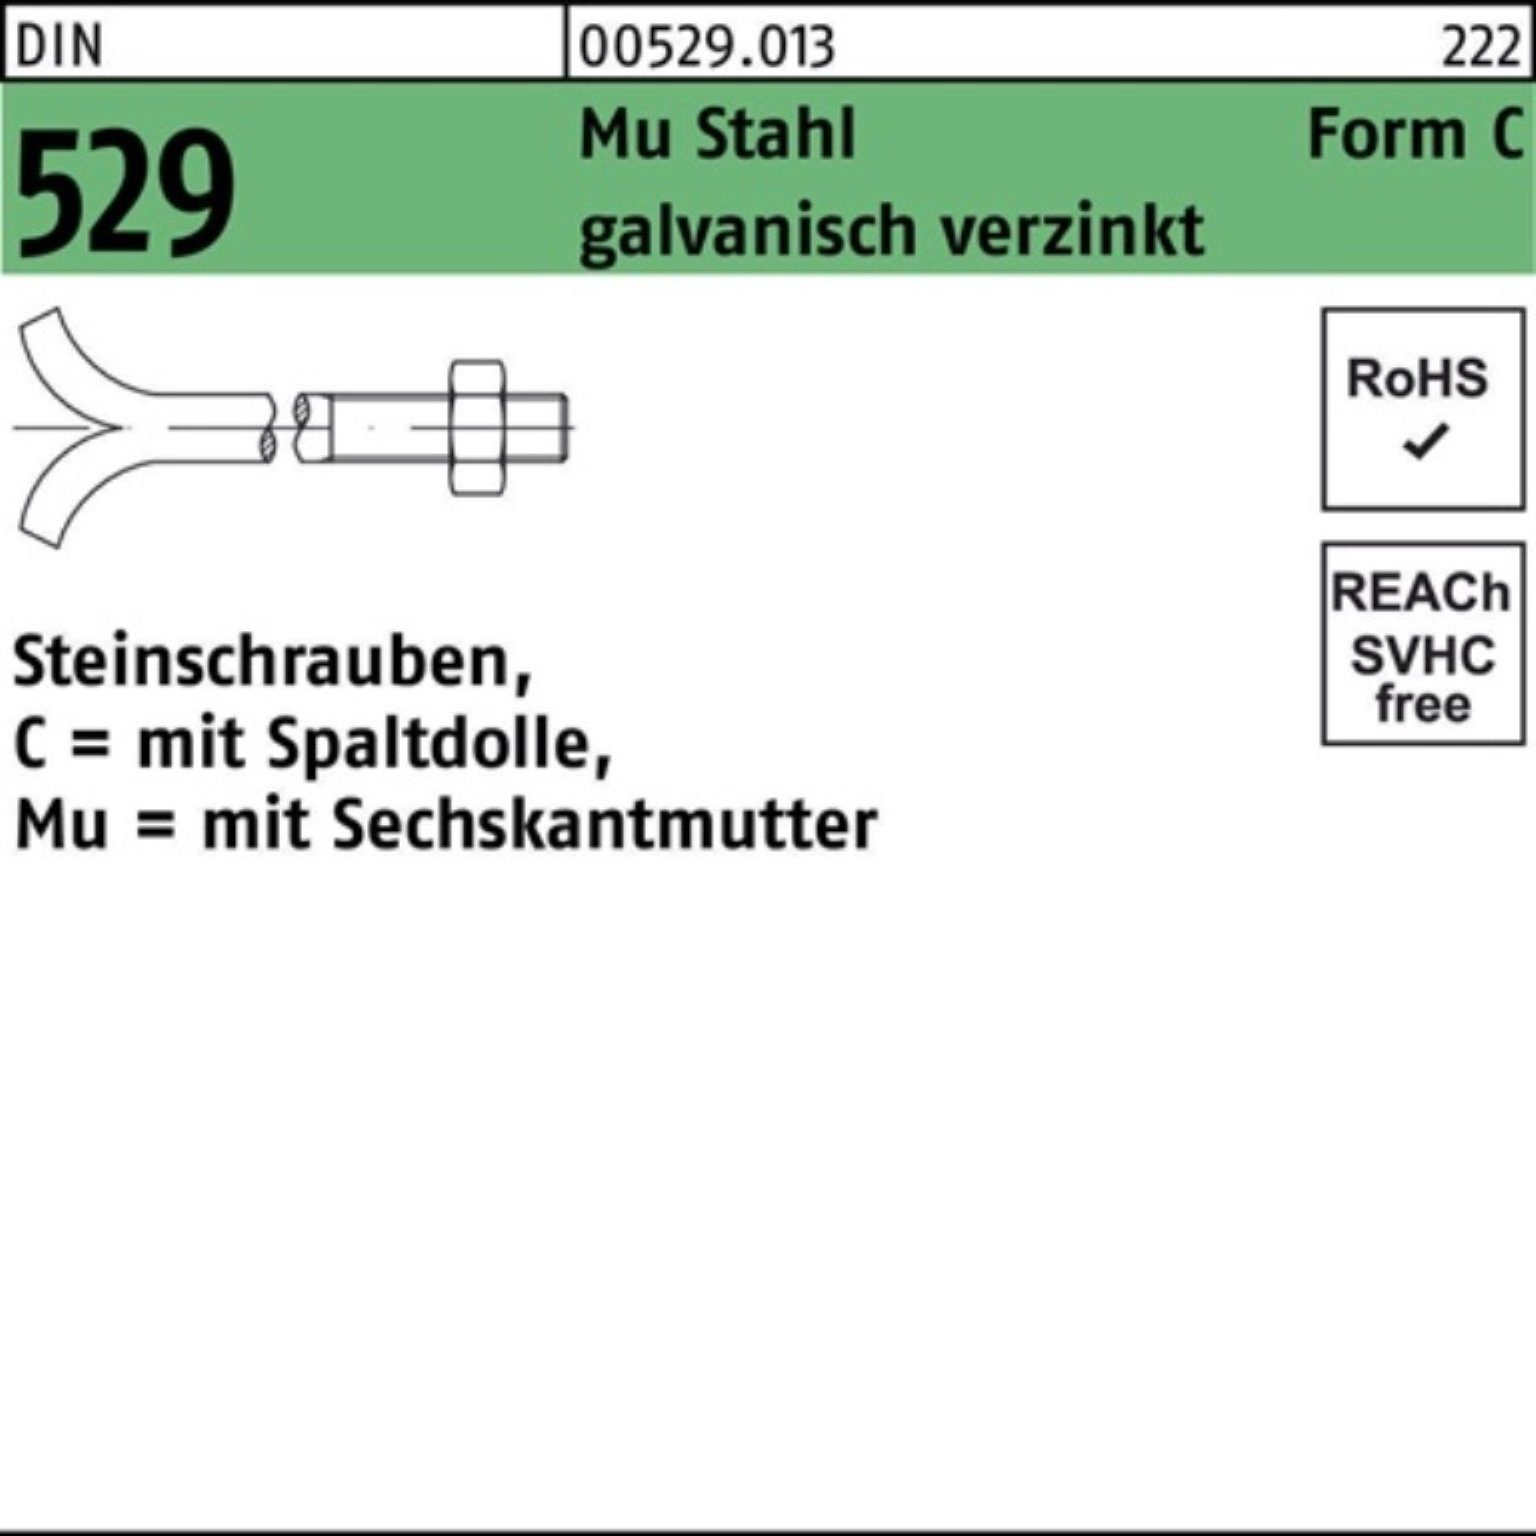 Reyher Schraube 100er Pack Spaltdolle/6-ktmutter 3. 16x200 529 Mu DIN CM Steinschraube